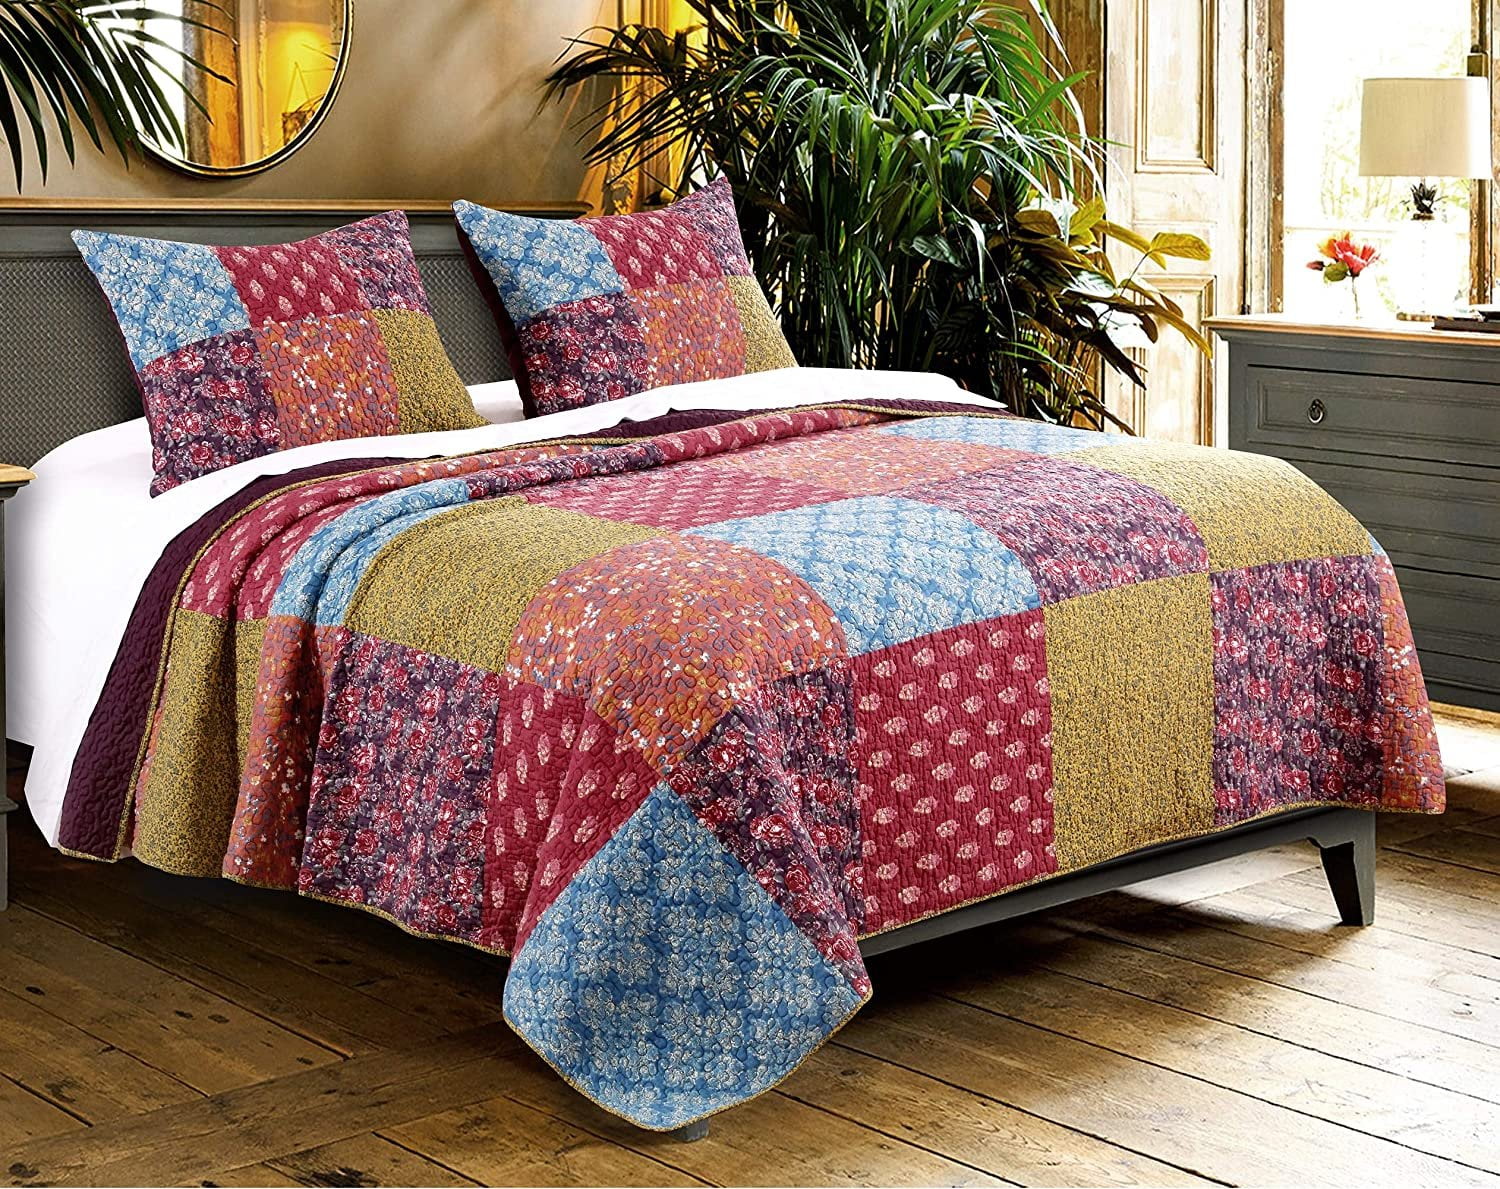 Tache Tea Party Vintage Cotton Reversible Patchwork Bedding Quilt Bedspread Set 